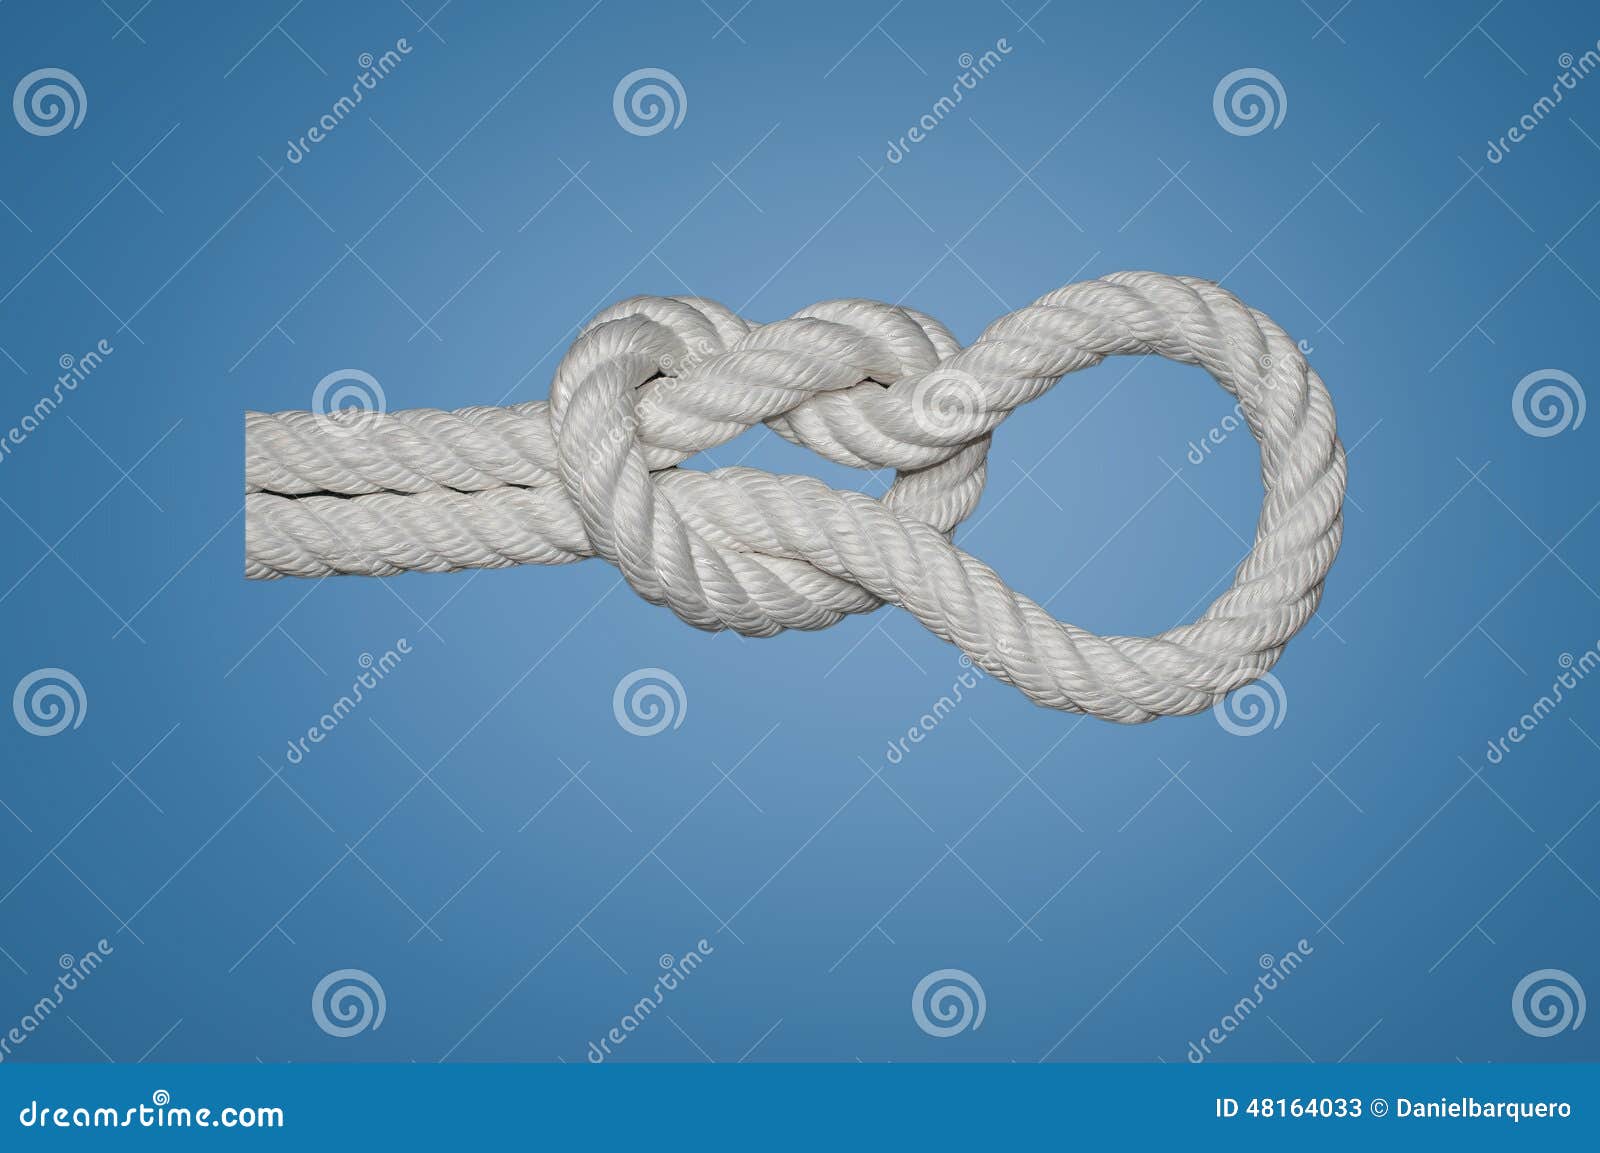 Running Knot stock image. Image of pull, nylon, running 48164033